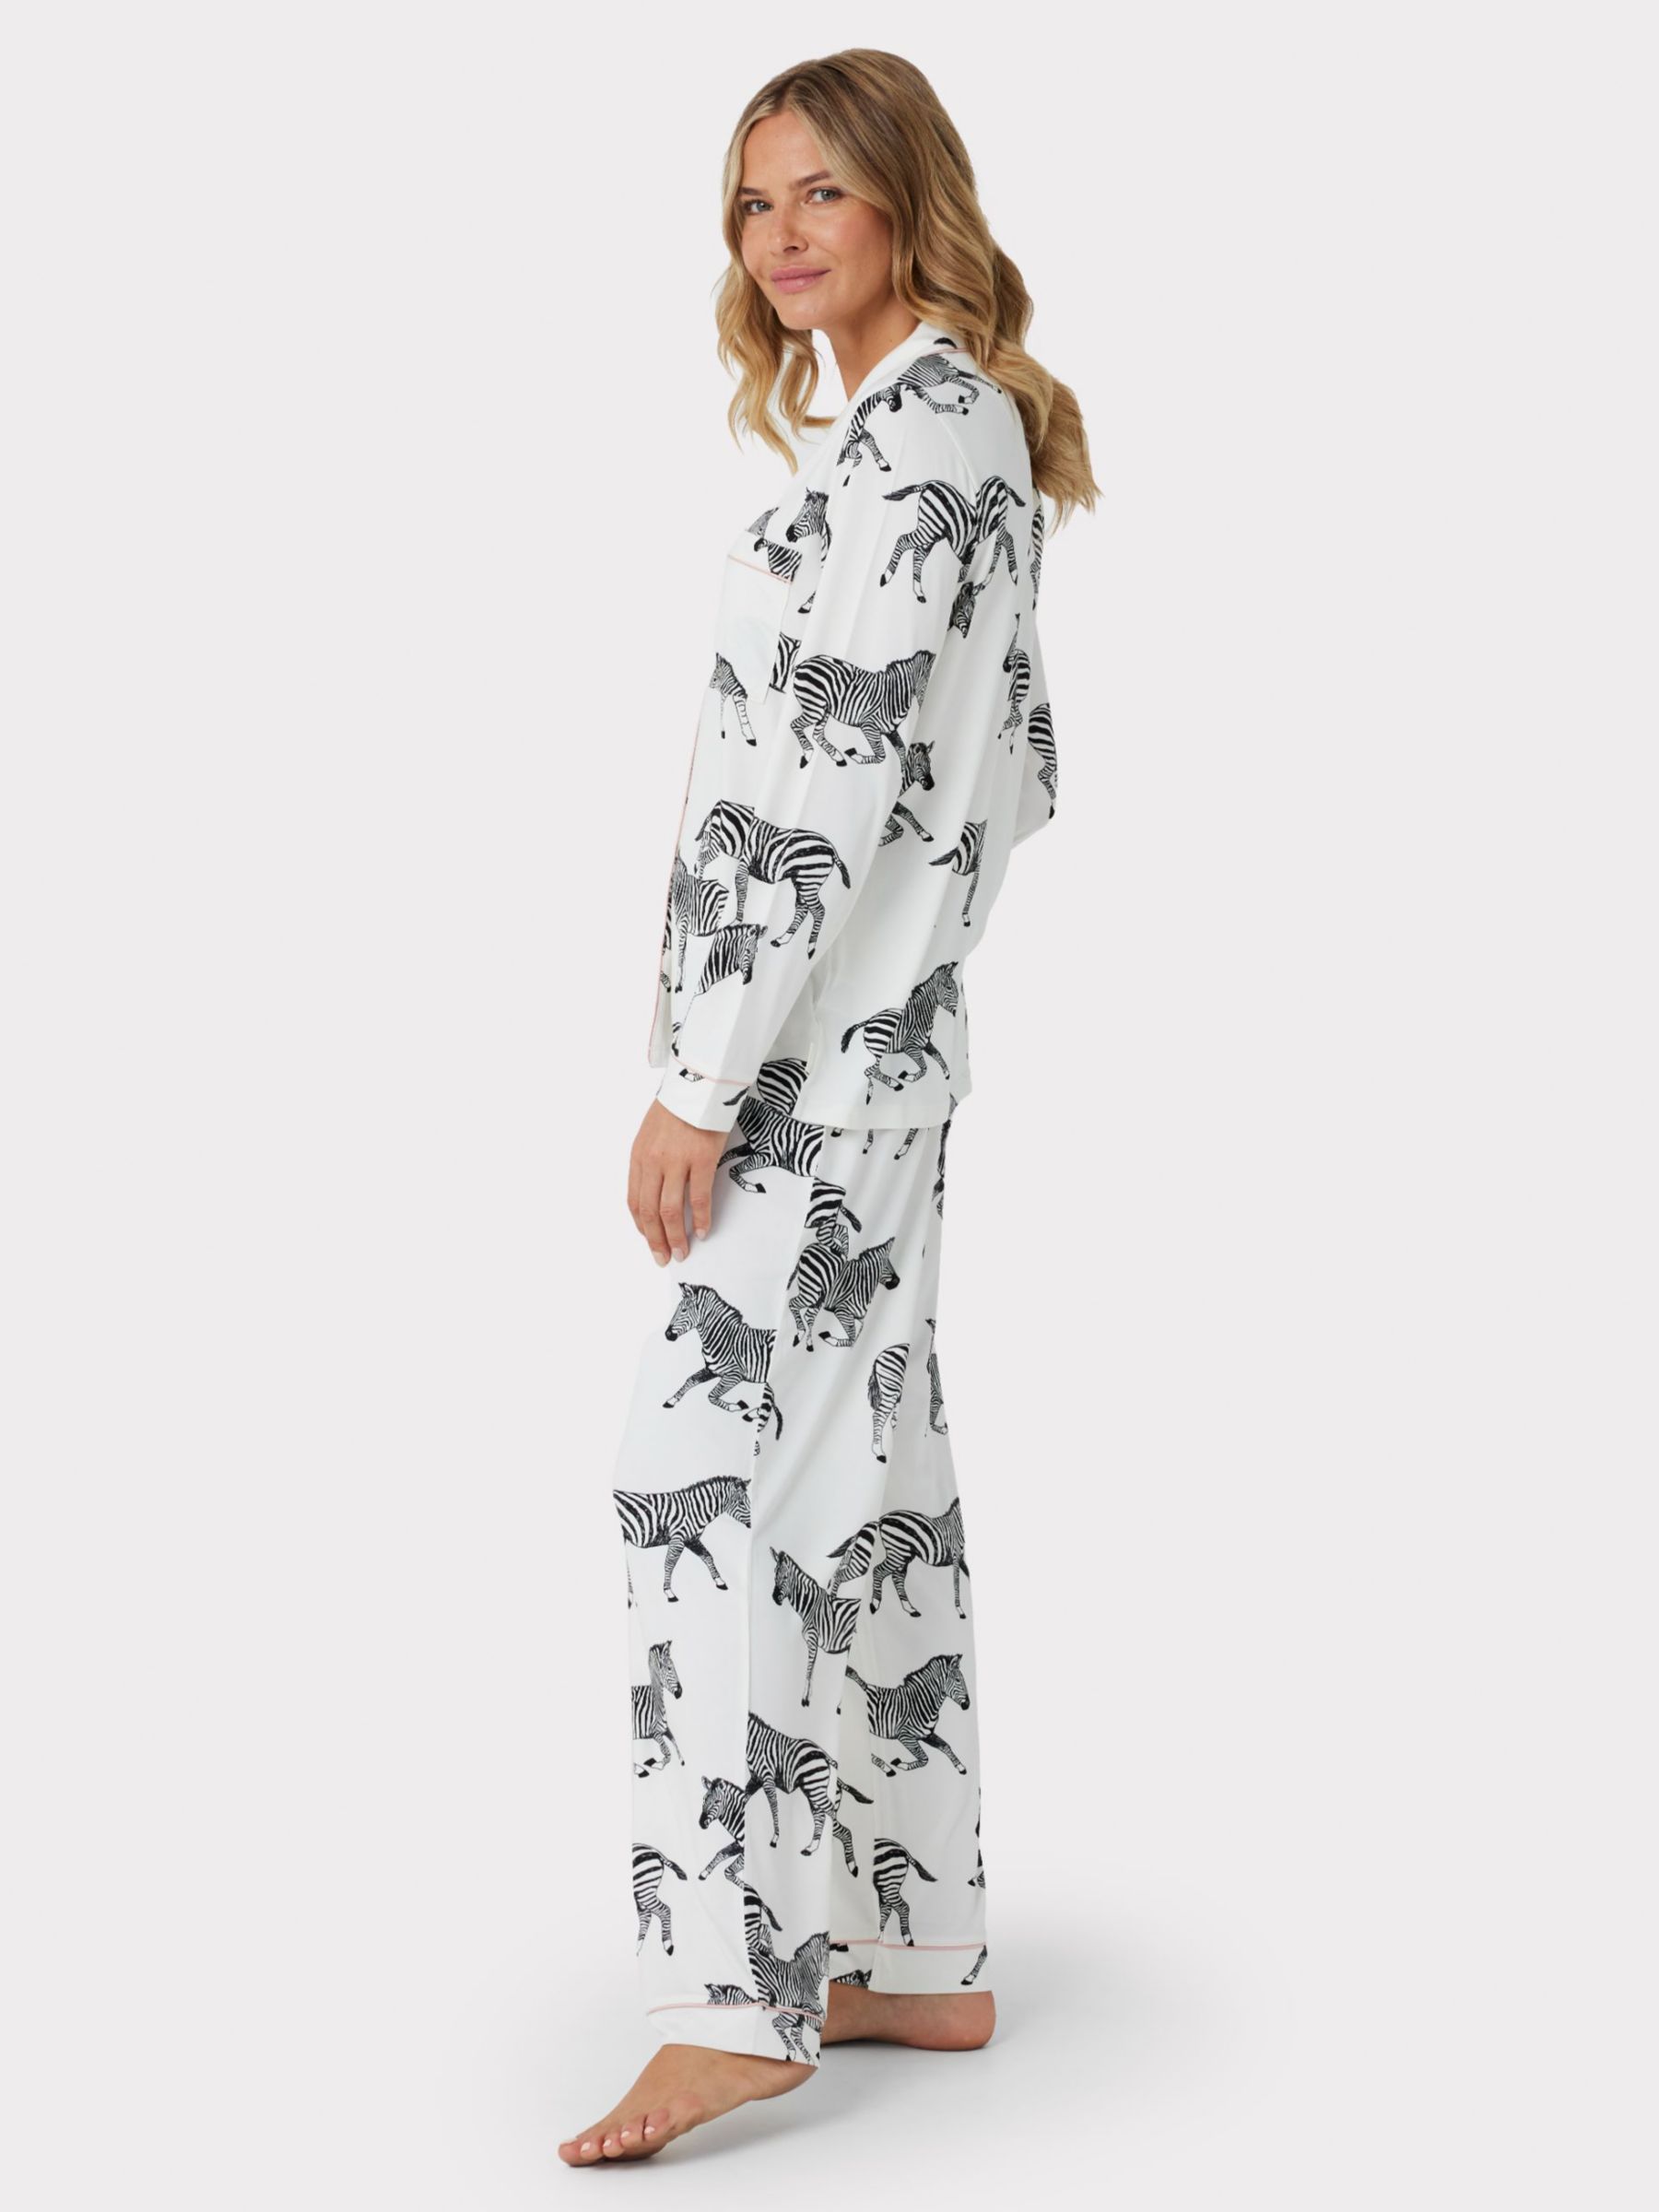 Buy Chelsea Peers Zebra Print Recycled Long Pyjamas Online at johnlewis.com